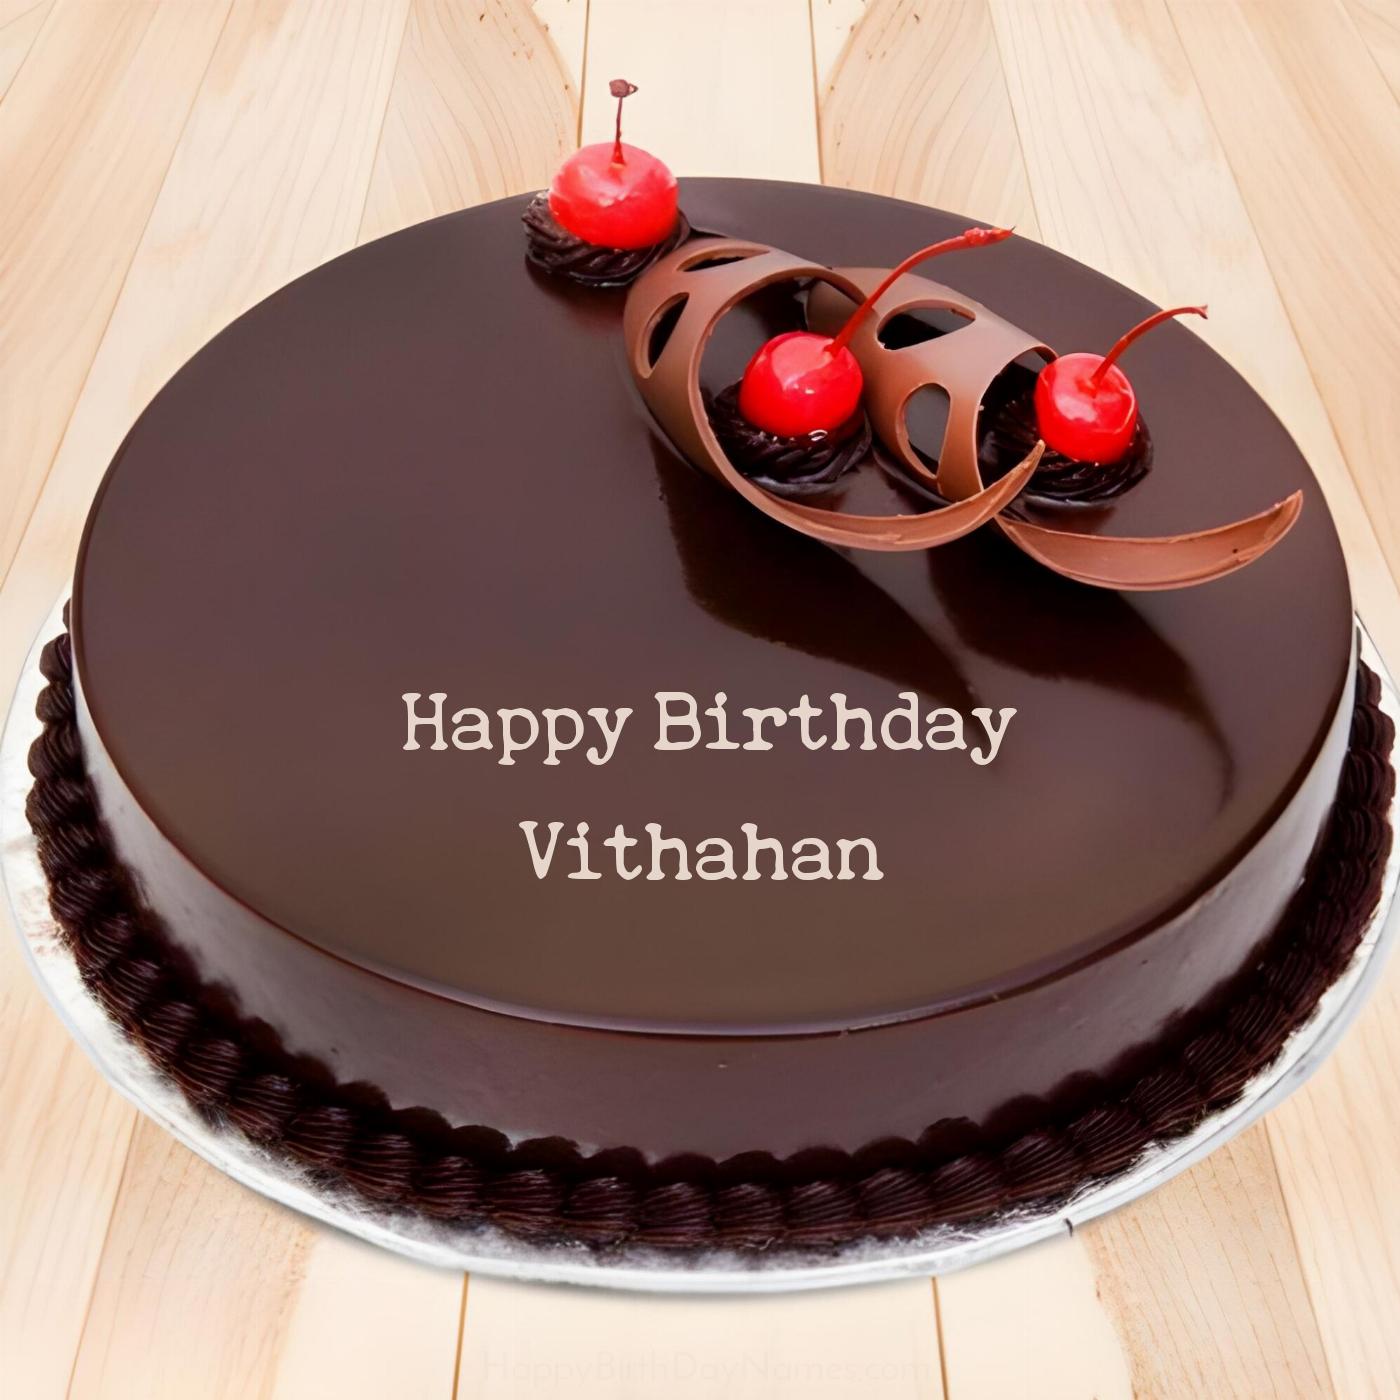 Happy Birthday Vithahan Chocolate Cherry Cake